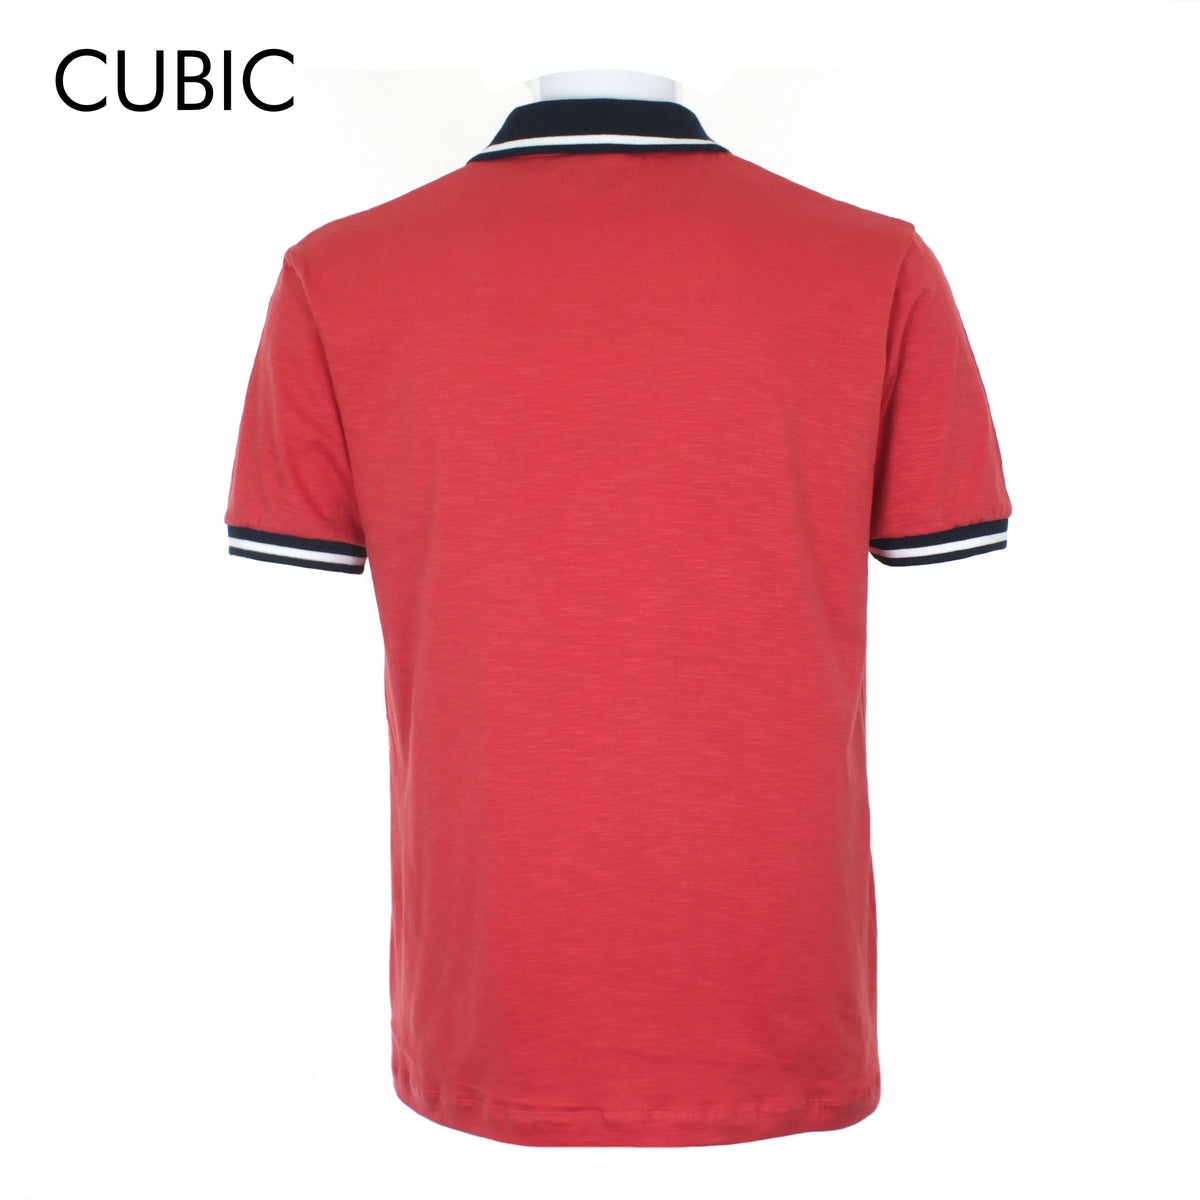 Cubic Mens Slub Jersey  Polo Shirt Polo-shirt Collar Top Top for Men - CMJ2336C